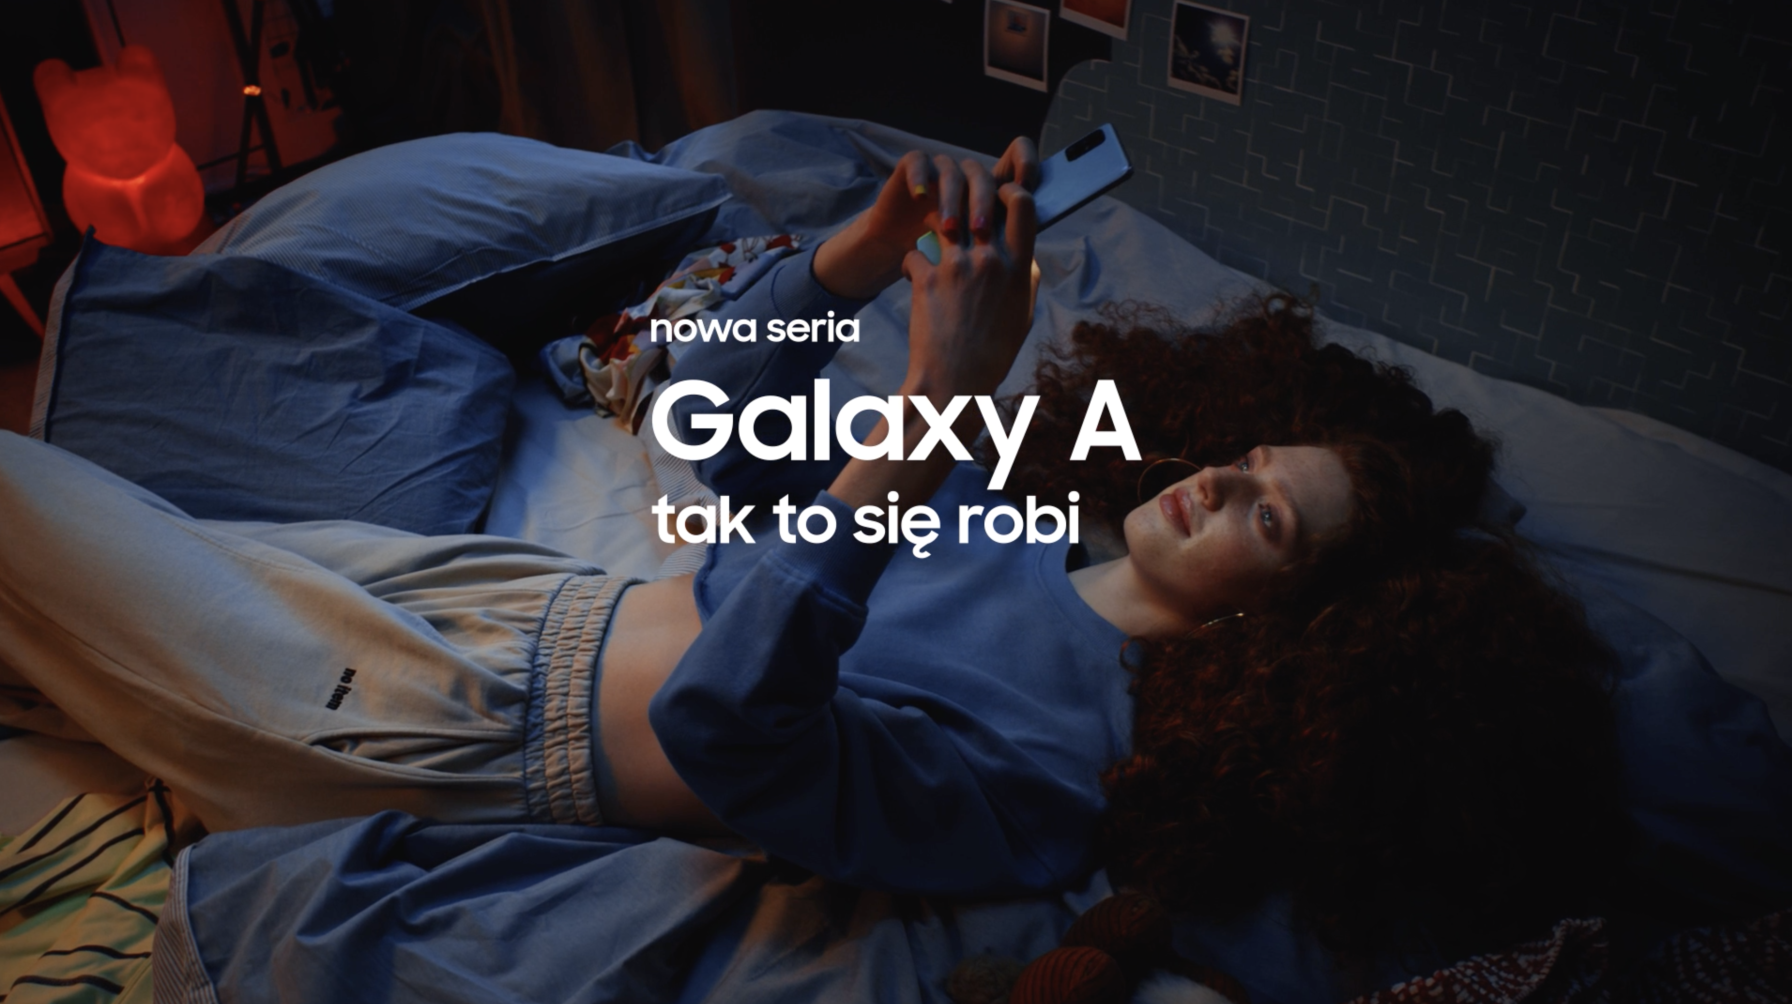 Samsung Galaxy A | Odkryj nową serię